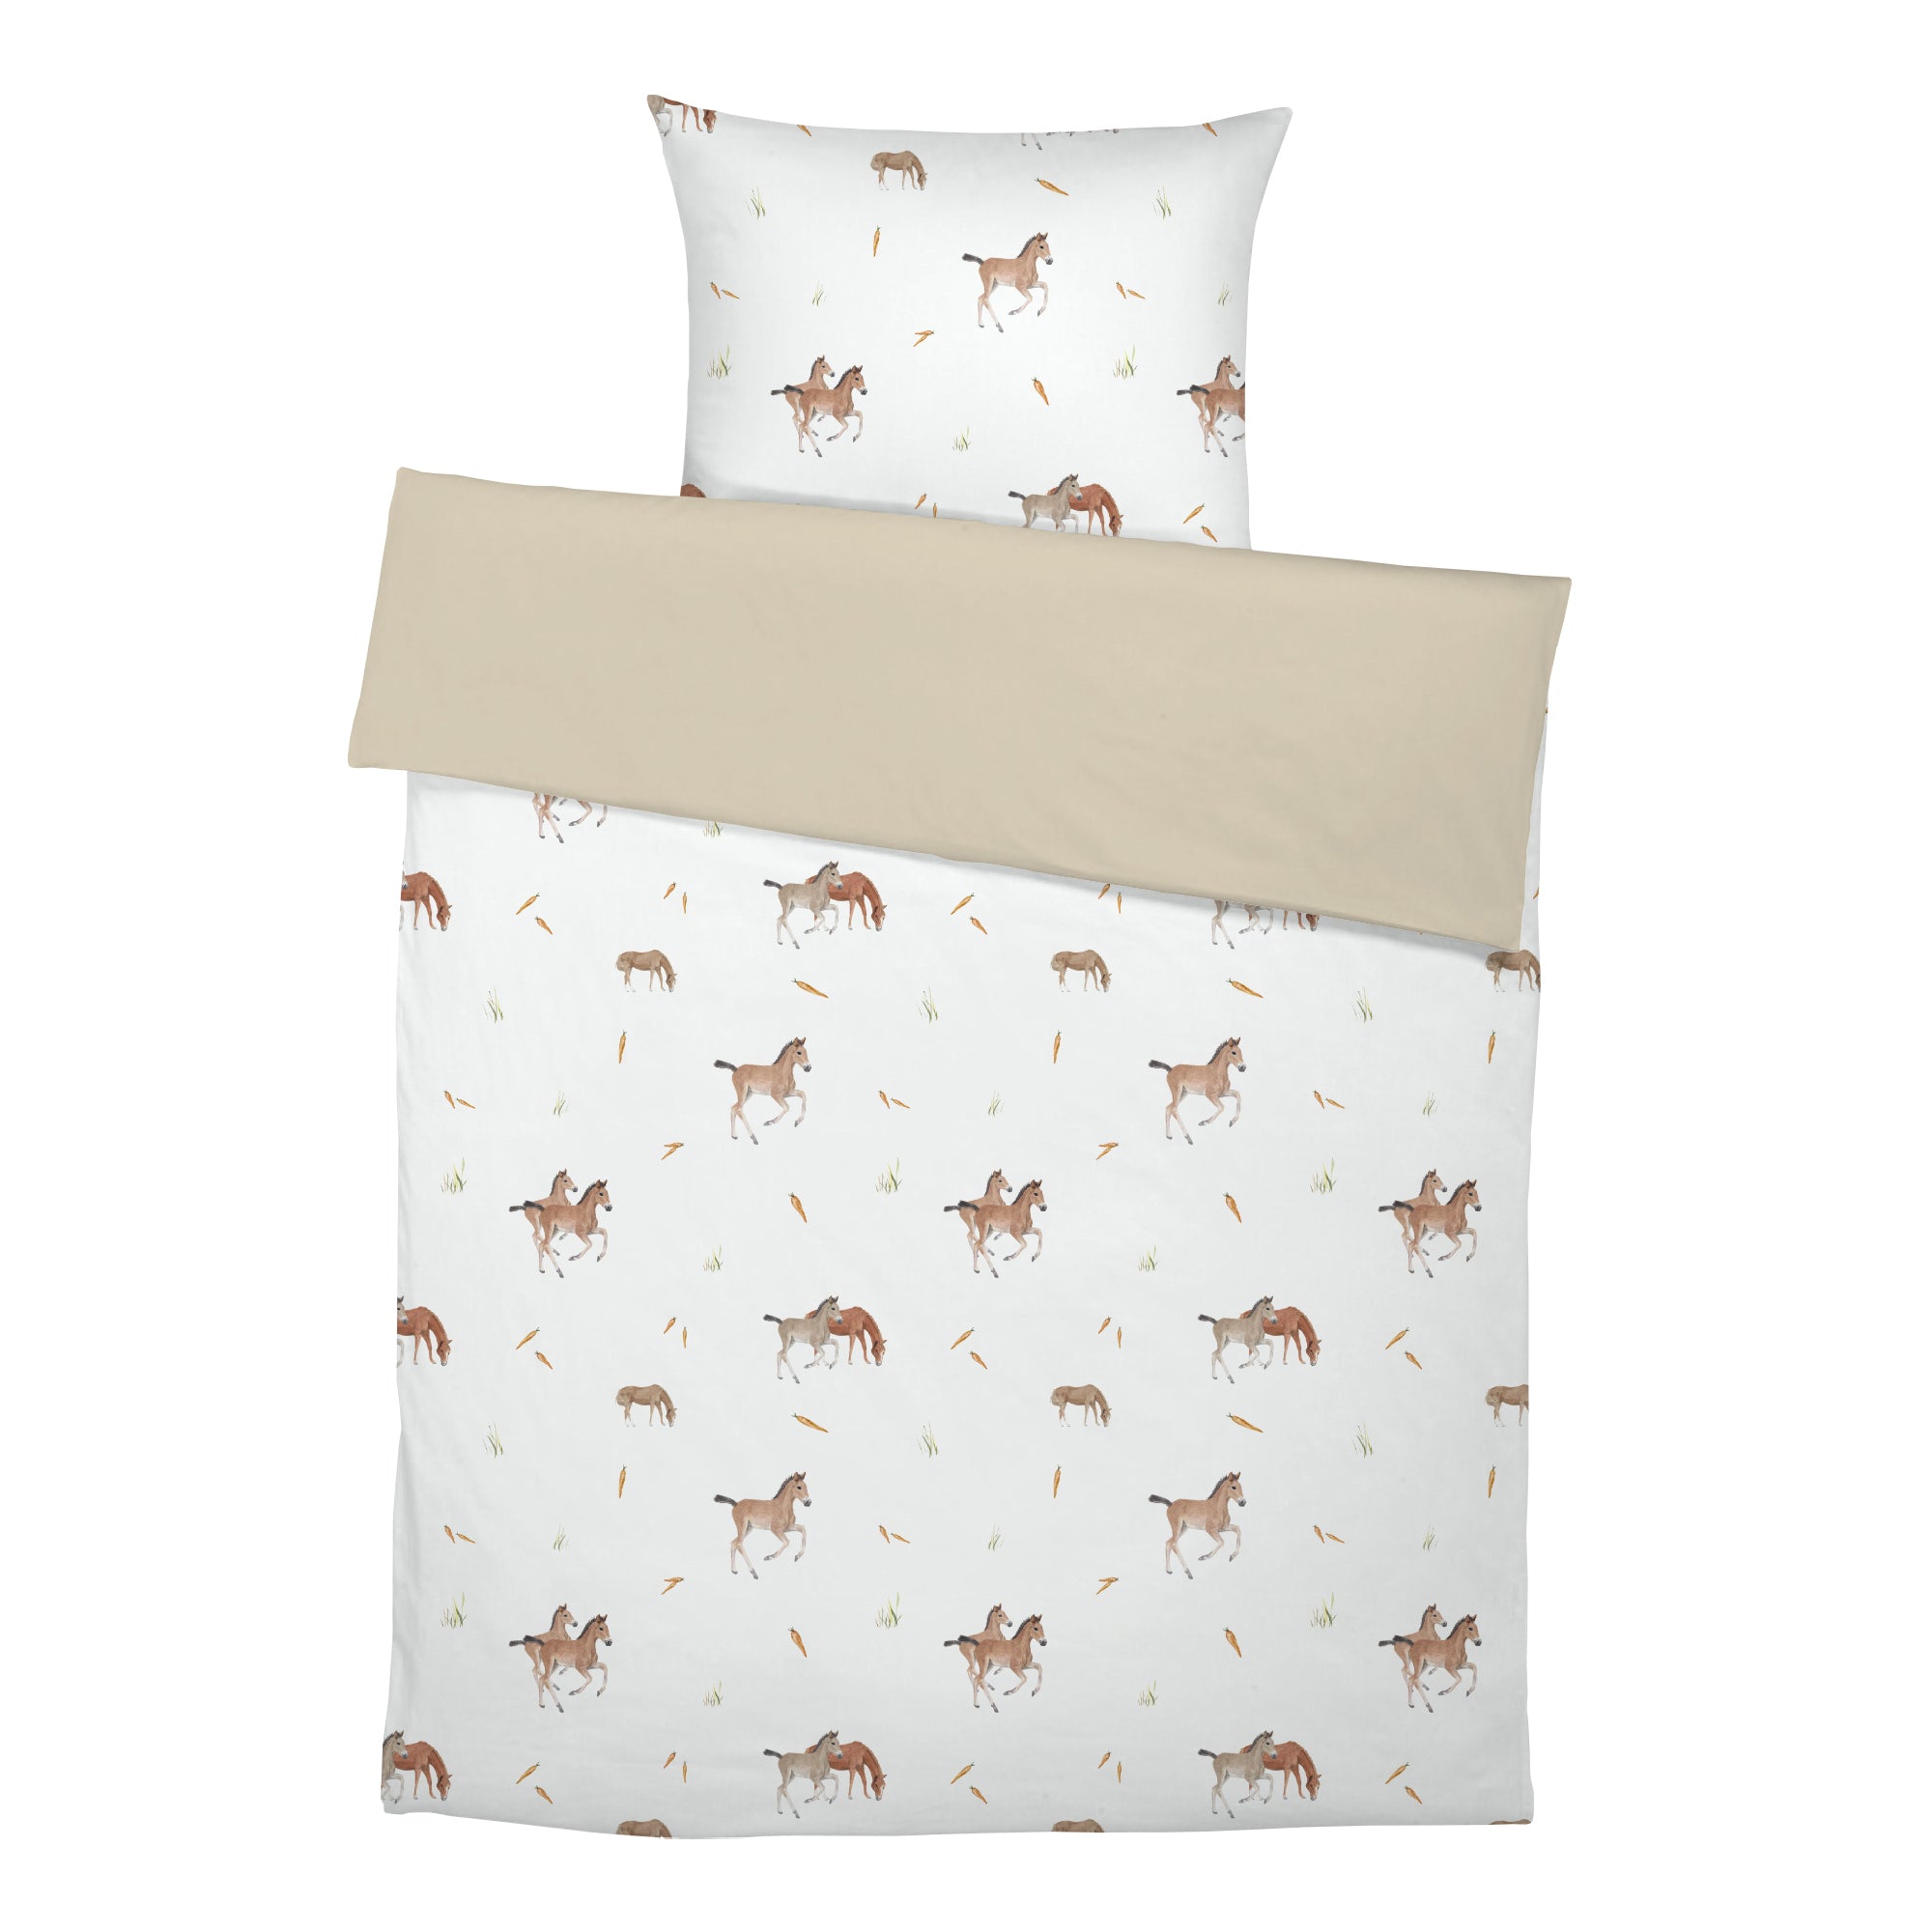 "Horses" premium children's bed linen